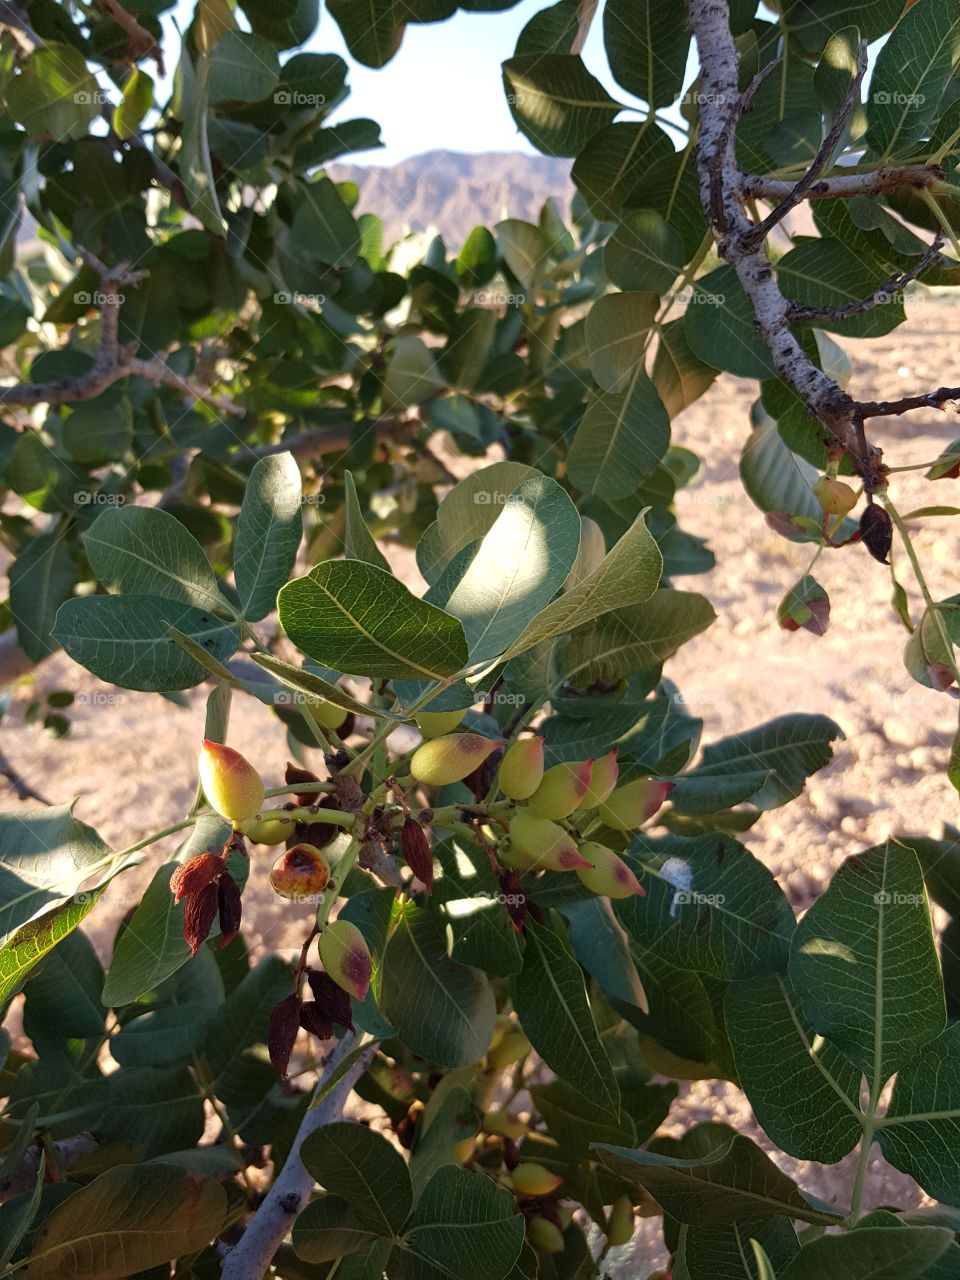 pistachios Tunisia